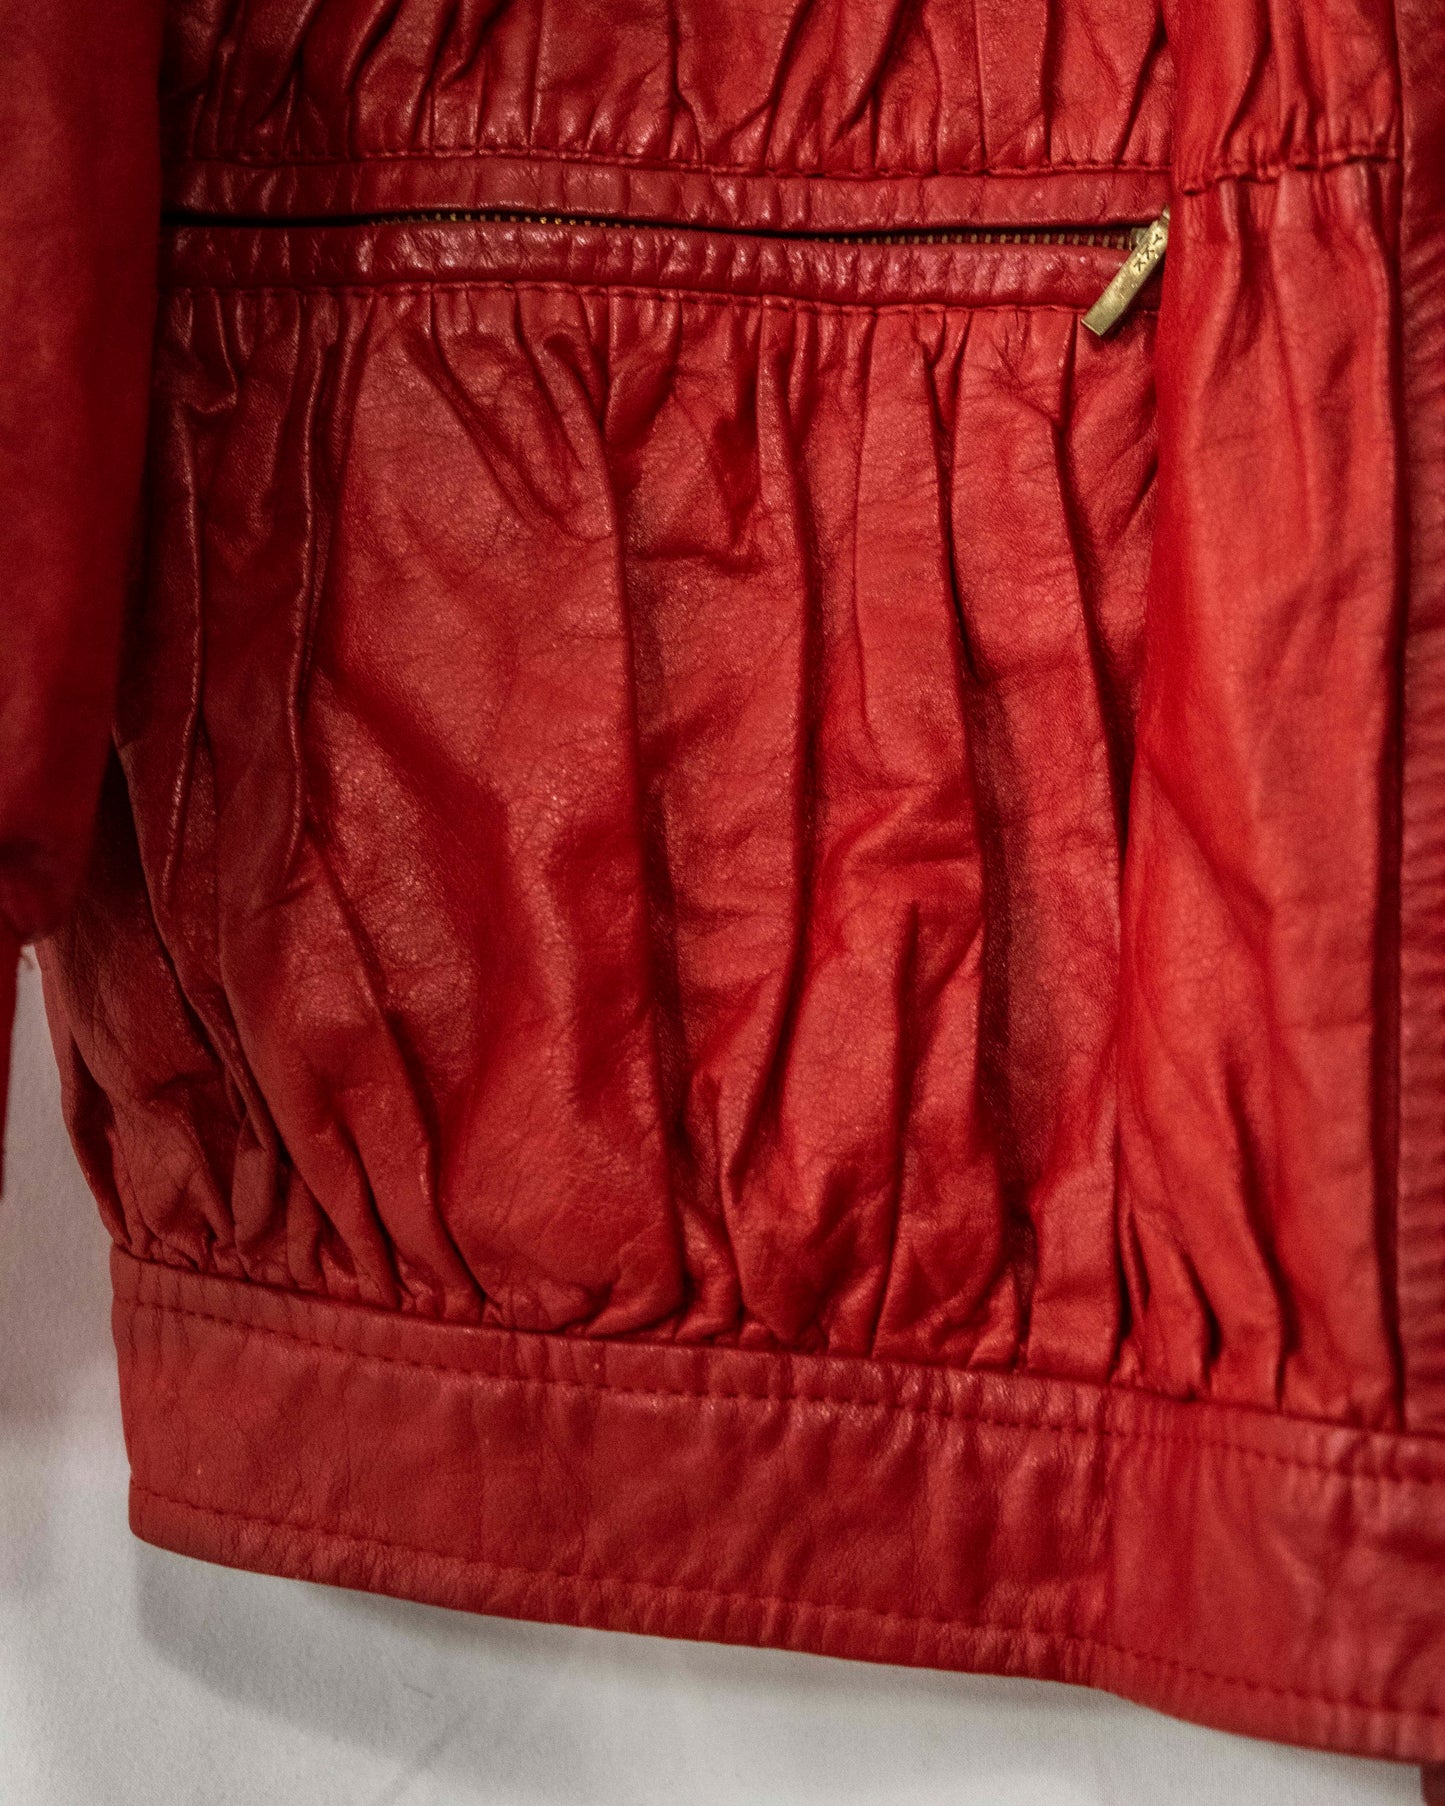 粗犷的红色皮夹克